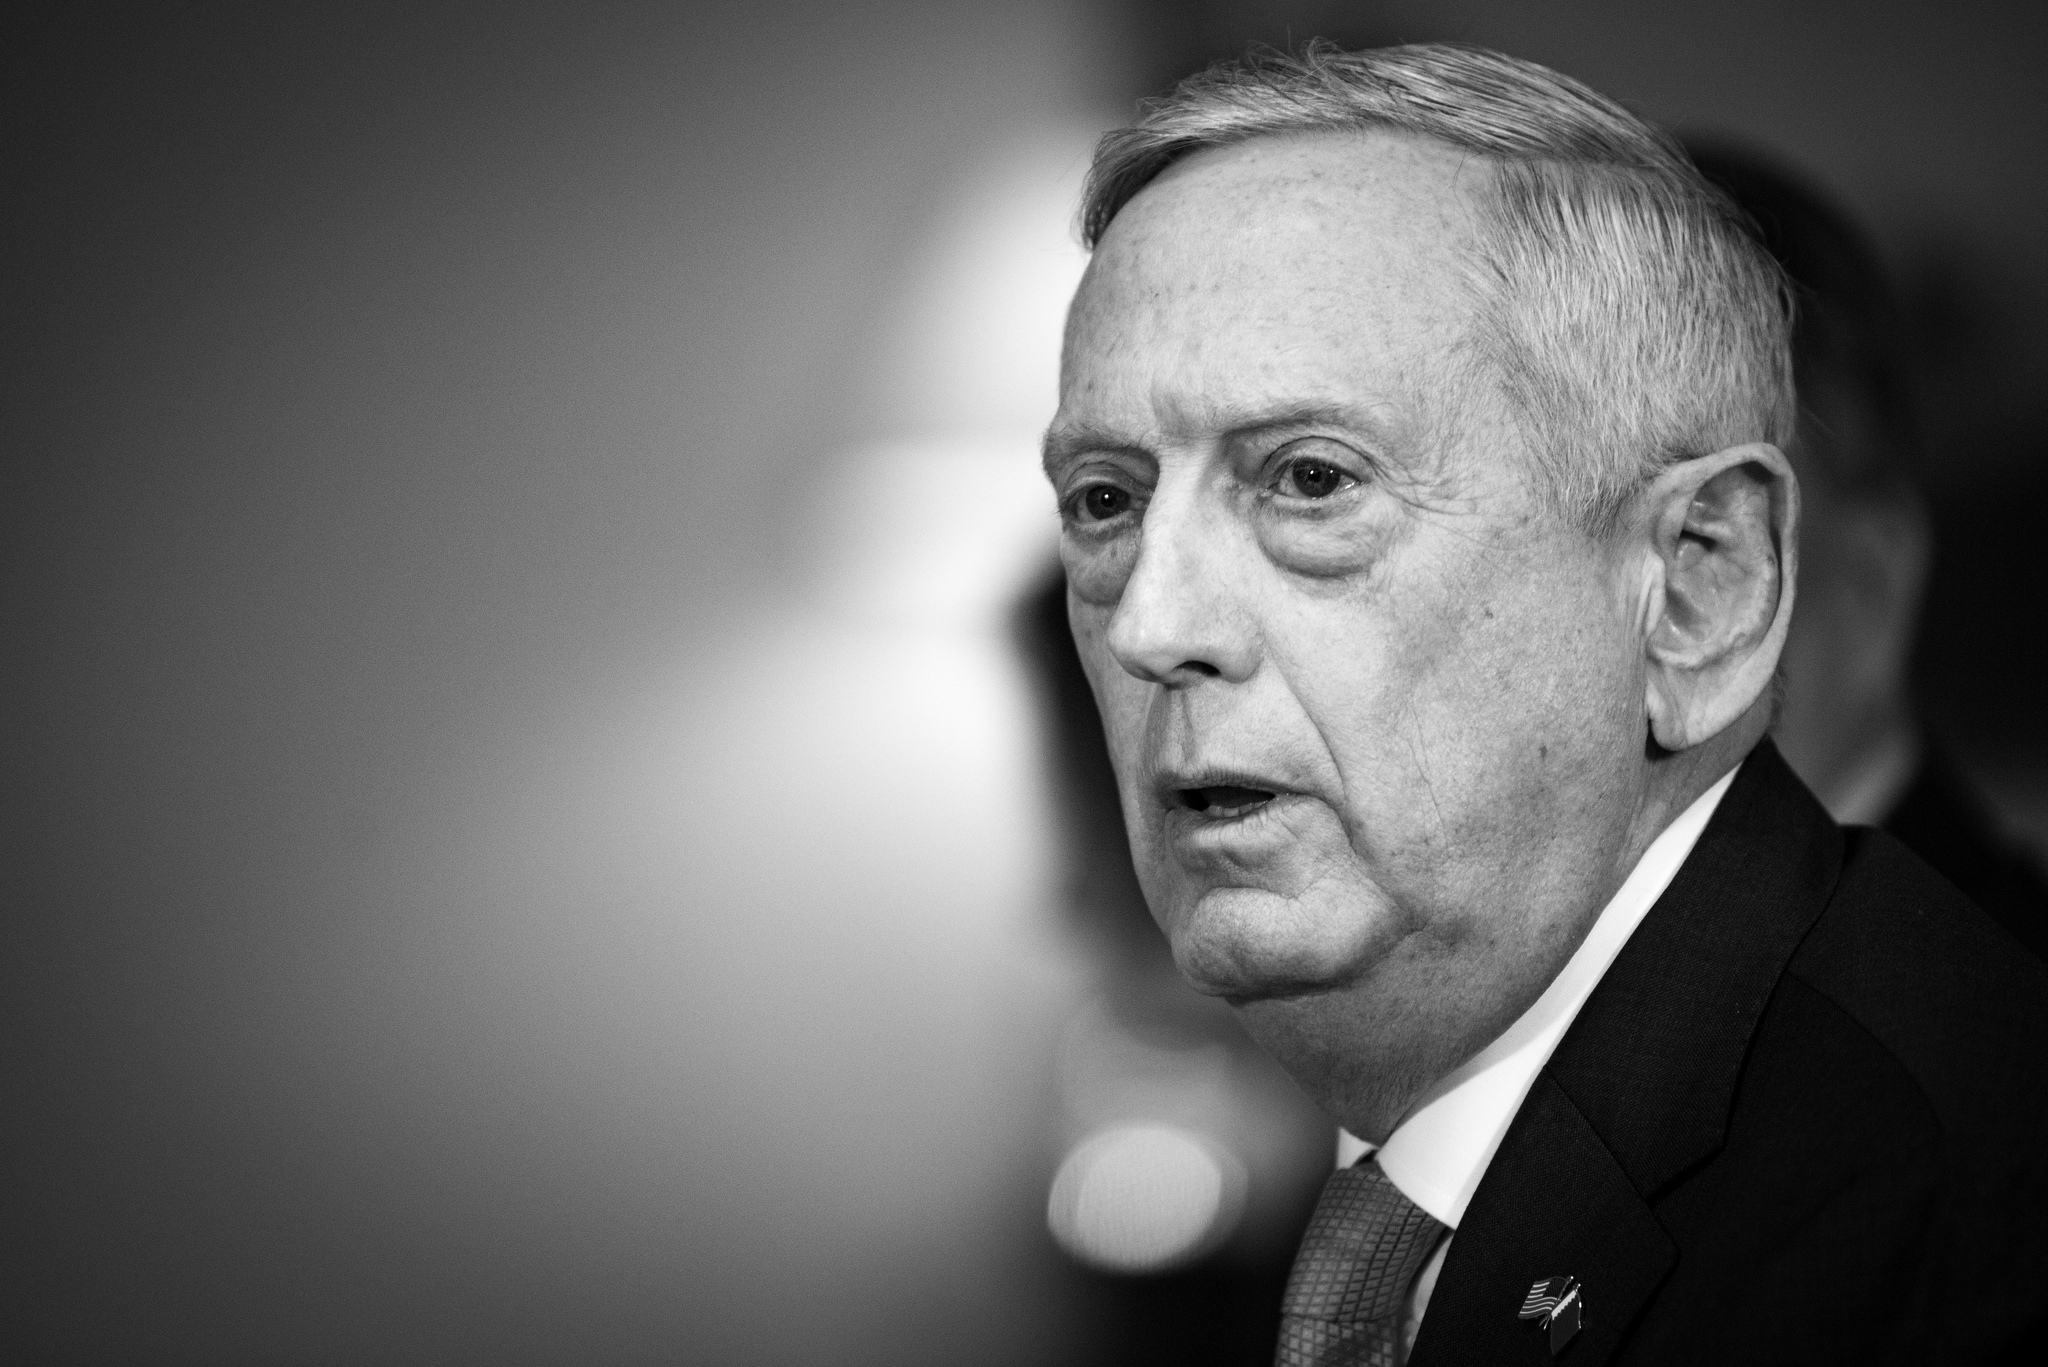 Американский министр обороны пожелал президенту США найти ему преемника с «лучше подходящими взглядами» undefined